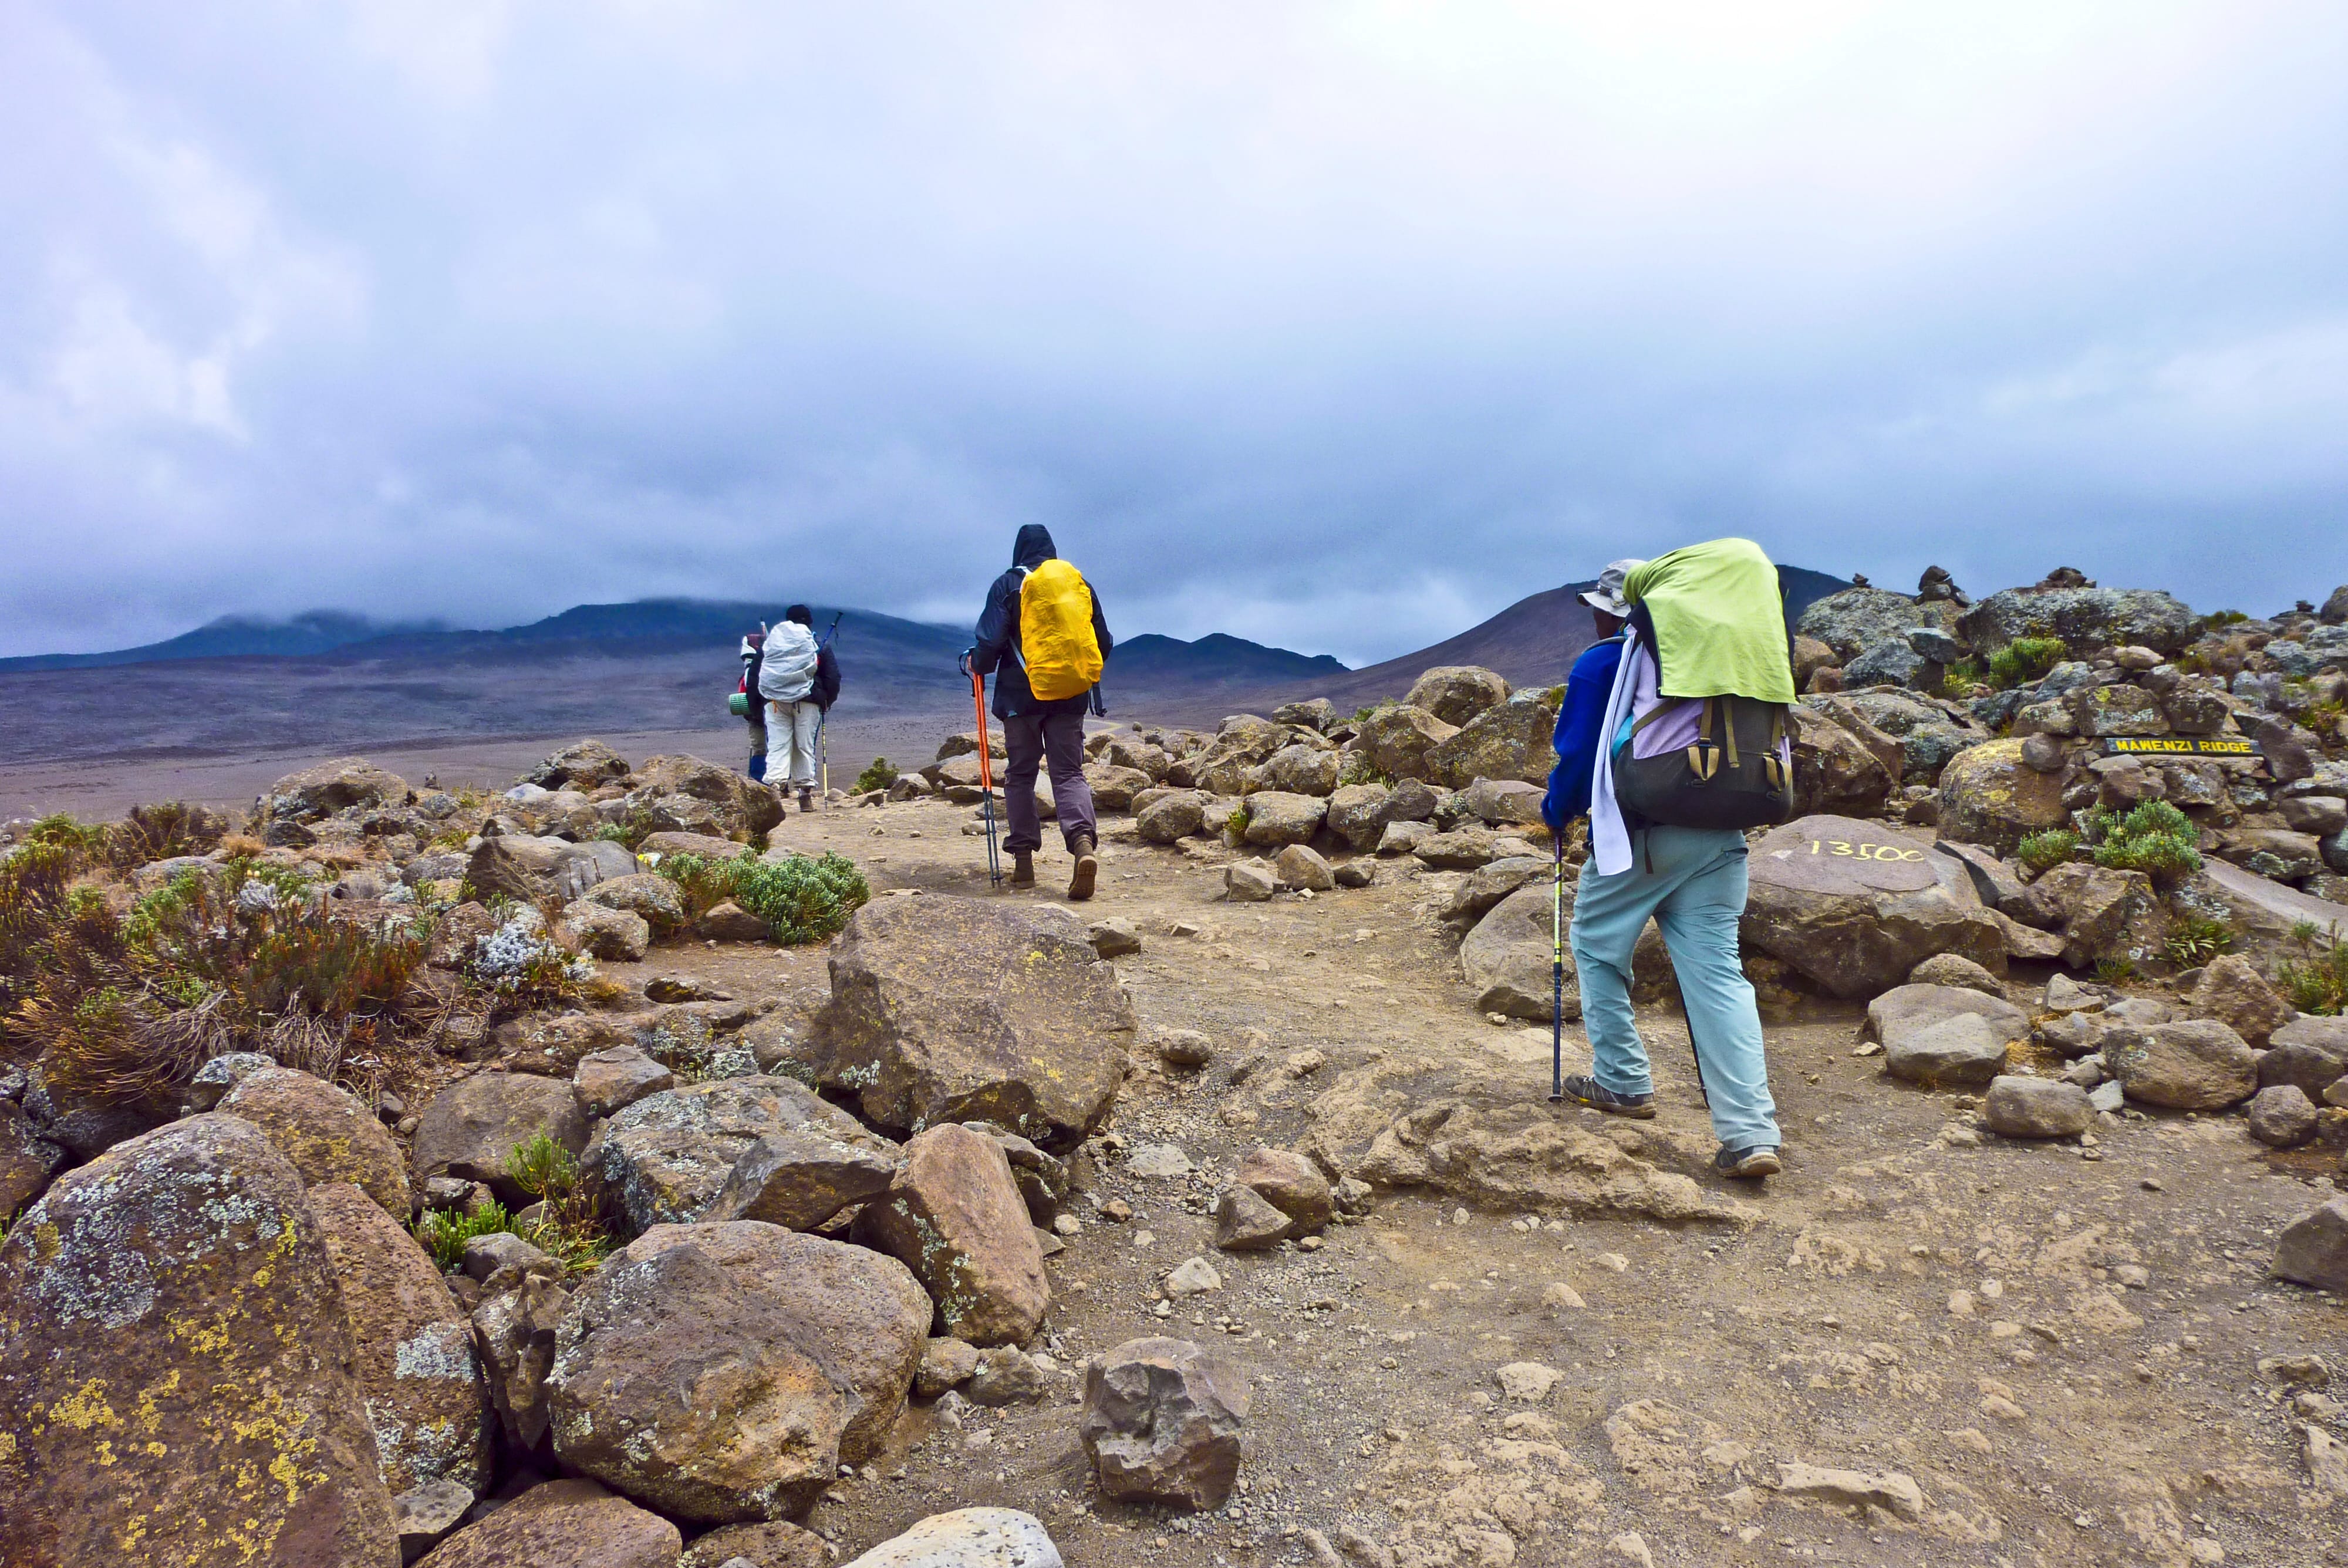 Для восхождения на Килиманджаро предлагаются различные туры, которые обычно занимают от 6 до 9 дней